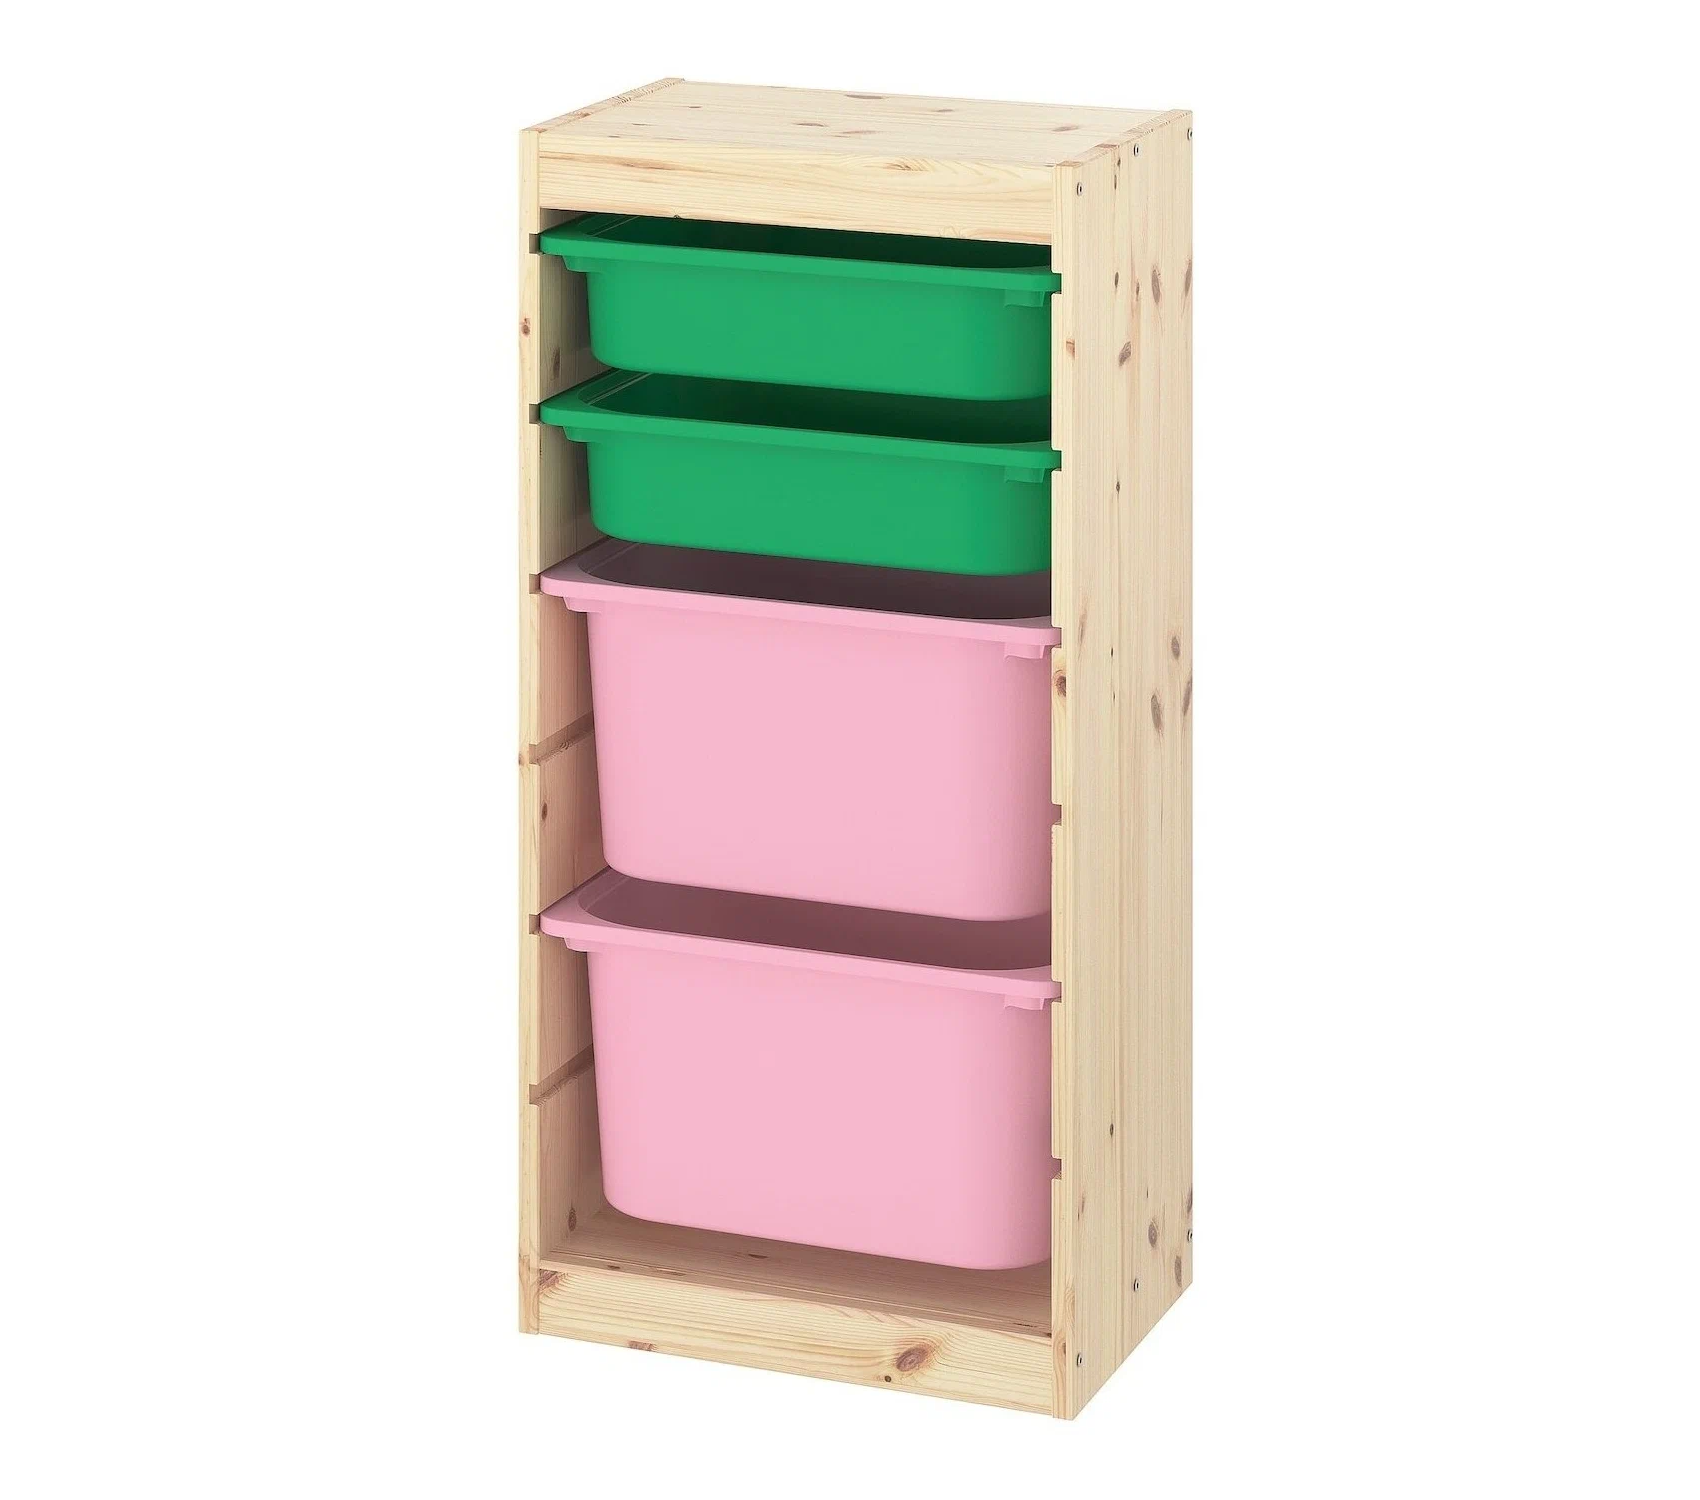 Ящик для хранения с контейнерами TROFAST 2М/2Б белый/зеленый Икеа коробка для хранения обуви unistor